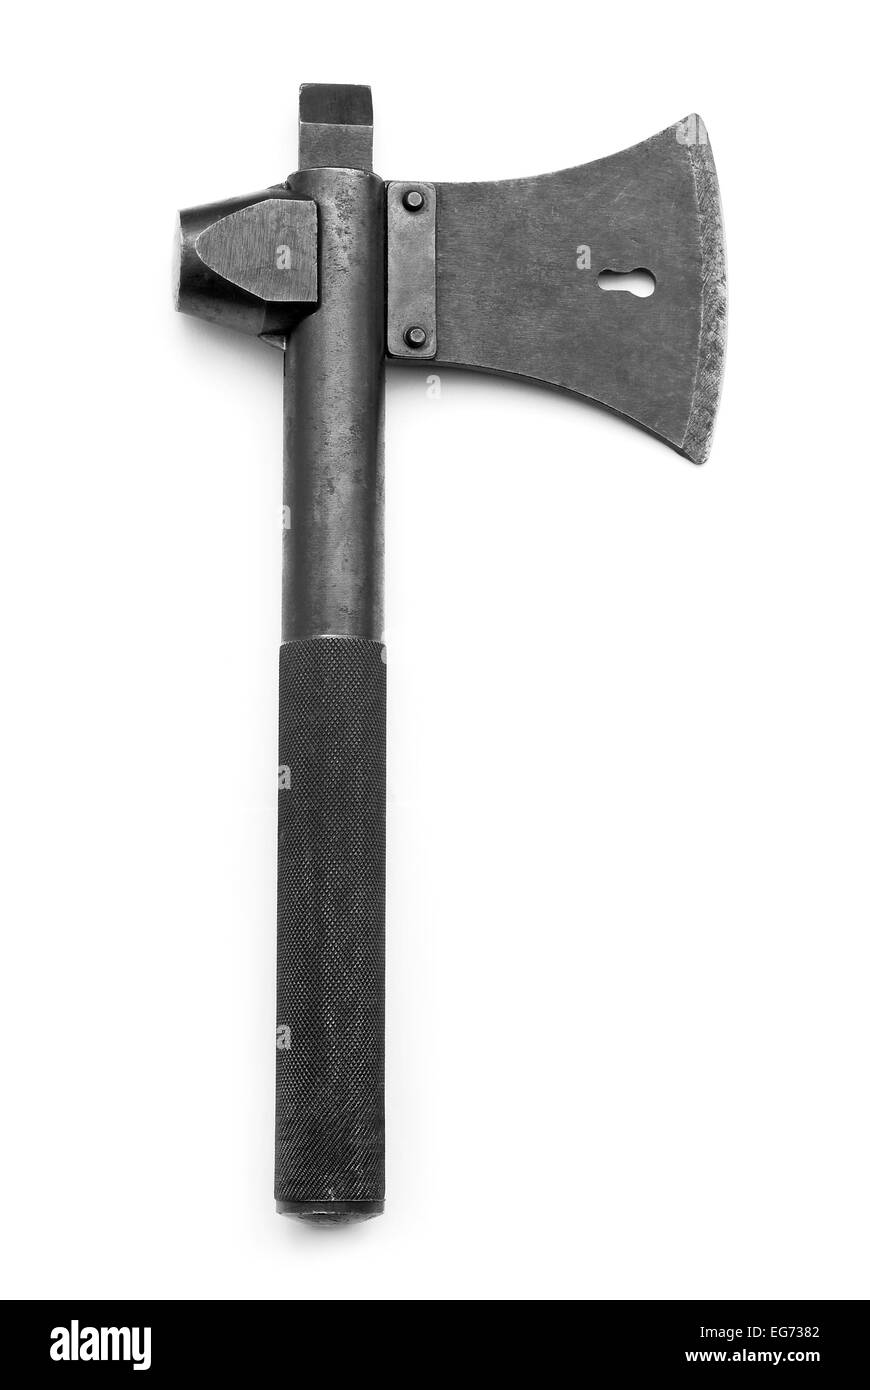 military axe on white Stock Photo - Alamy